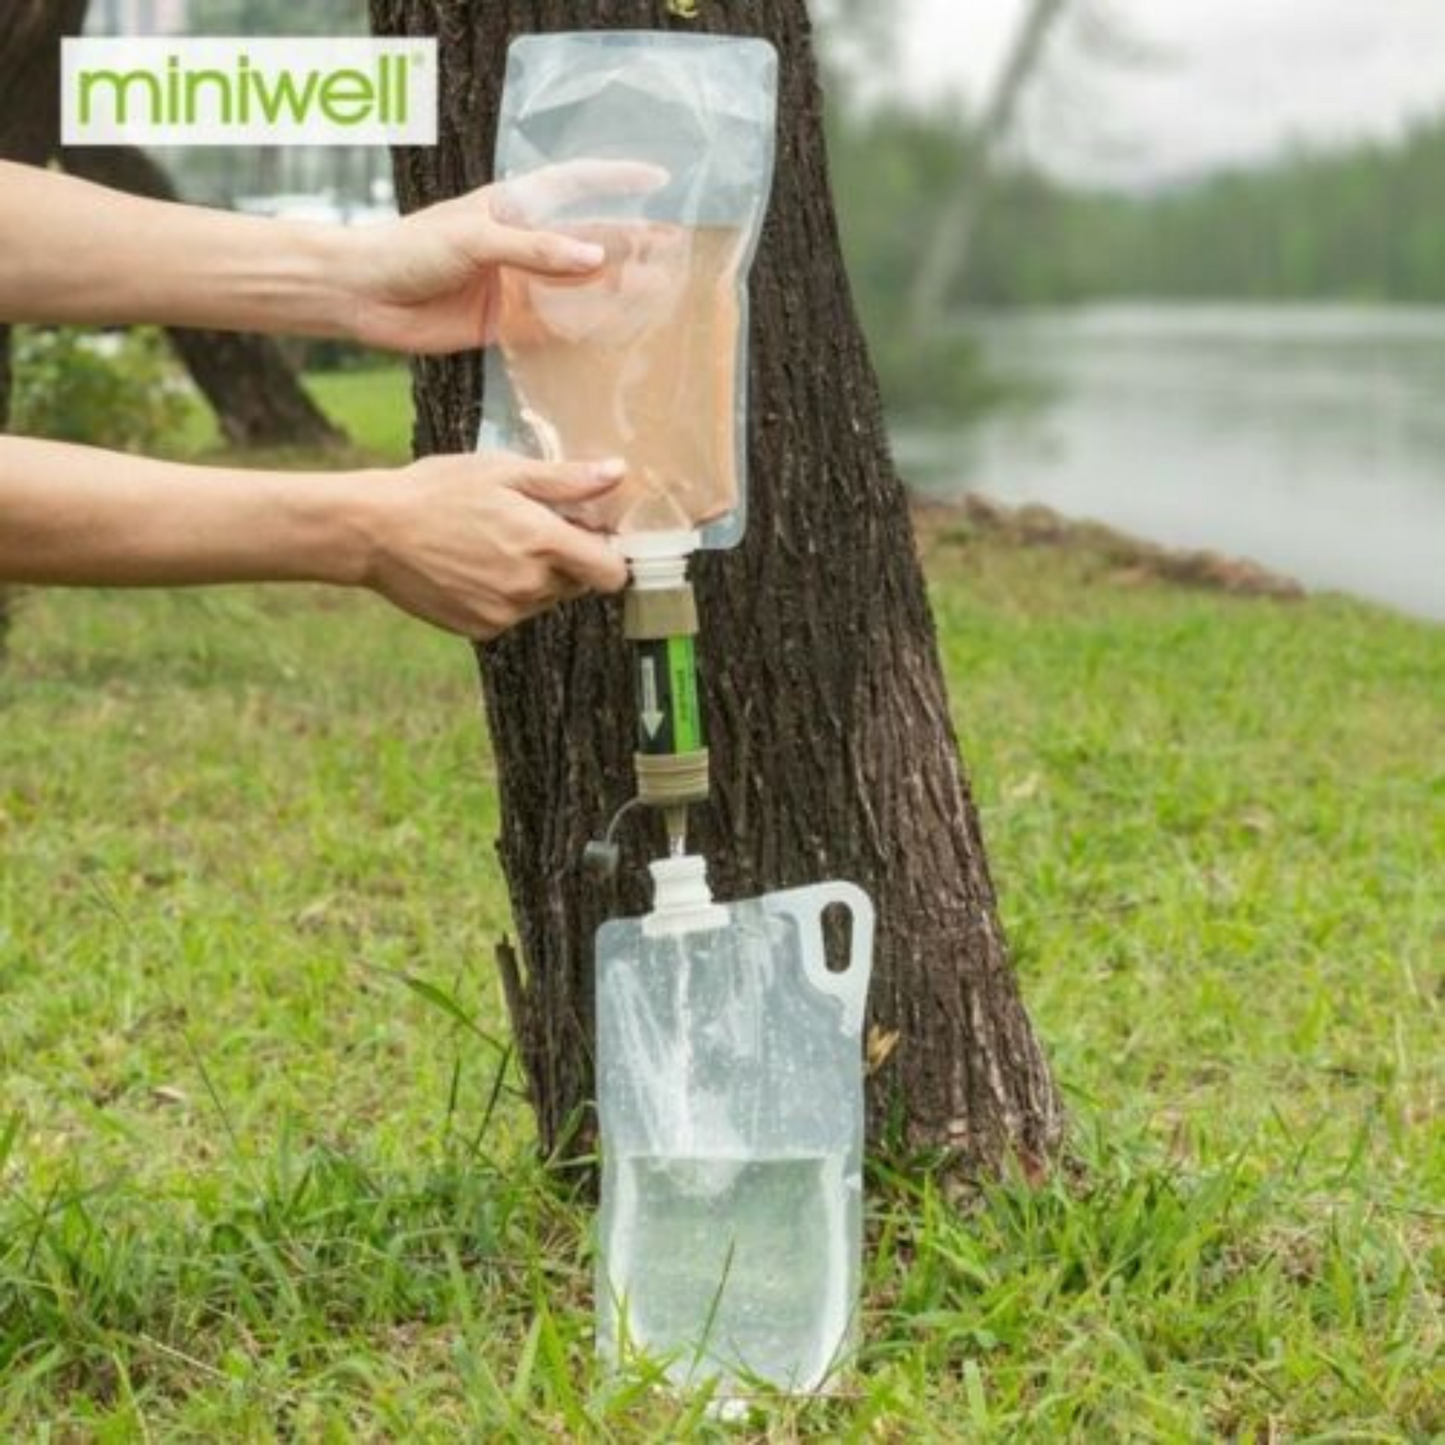 Portable Water Filter Kit MINIWELL L630